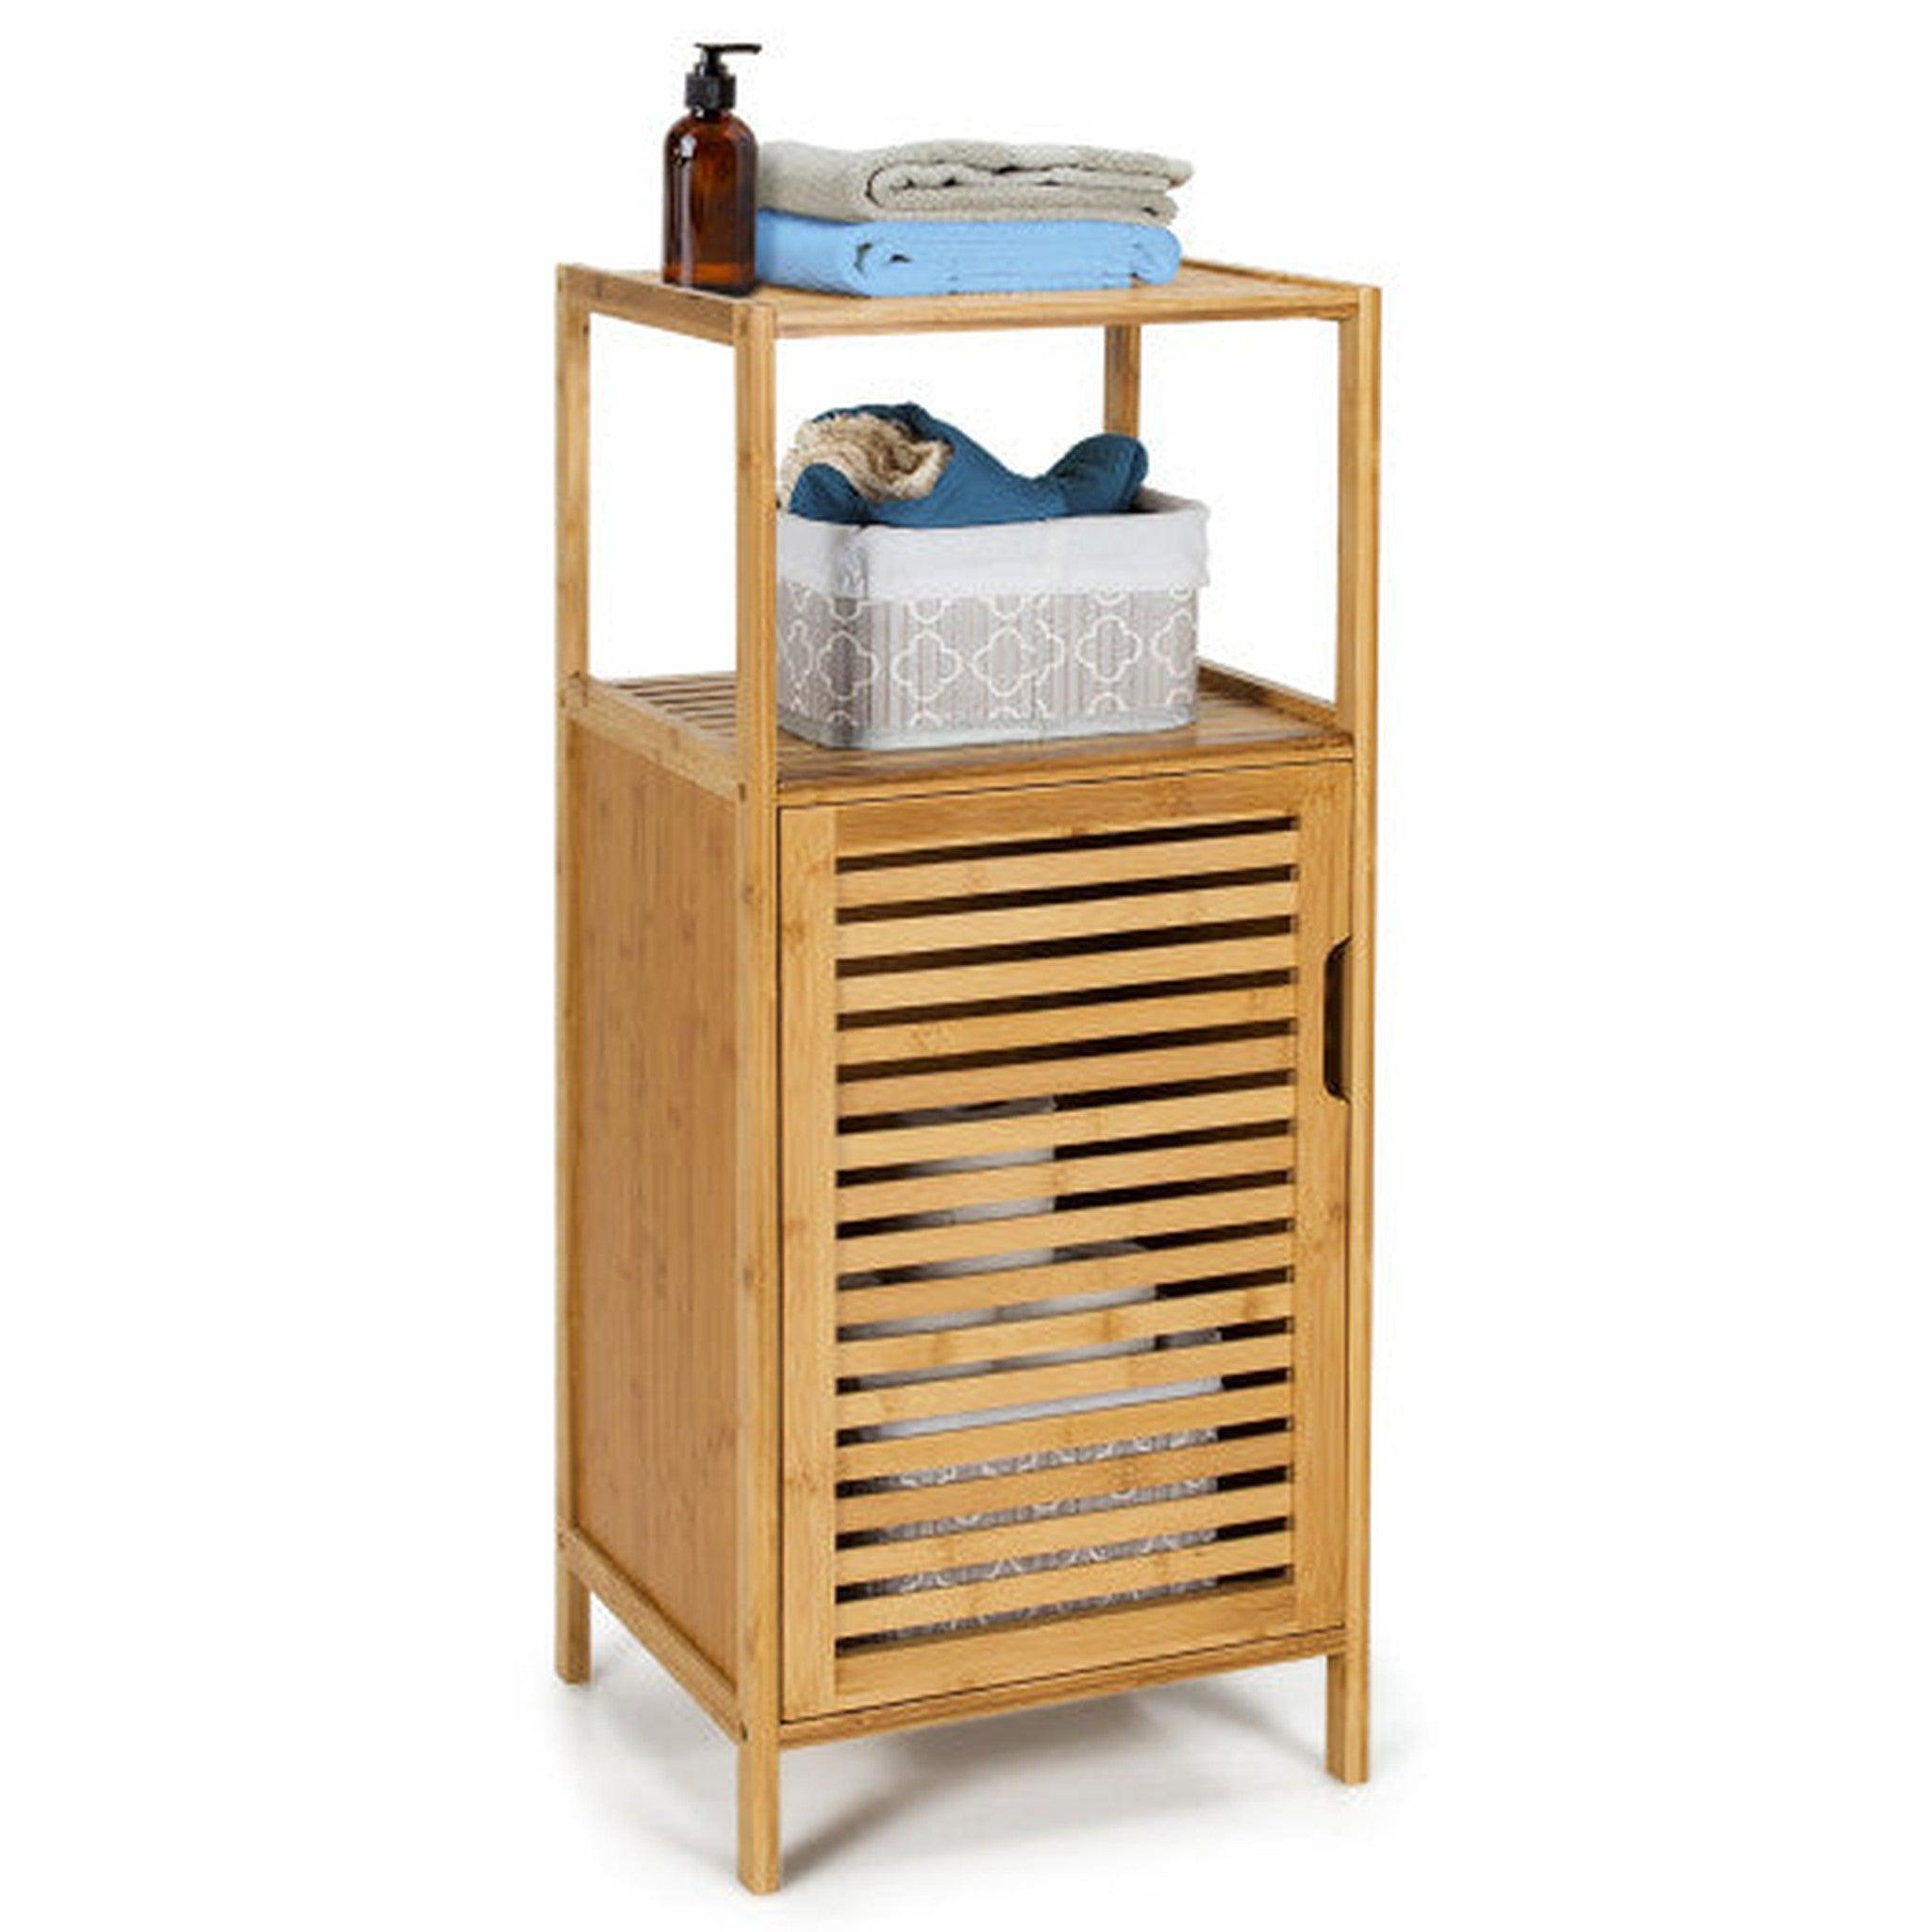 http://usbathstore.com/cdn/shop/files/Costway-Bamboo-Bathroom-Storage-Floor-Cabinet-with-Door-and-Shelf-Corner-Cabinet.jpg?v=1699893034